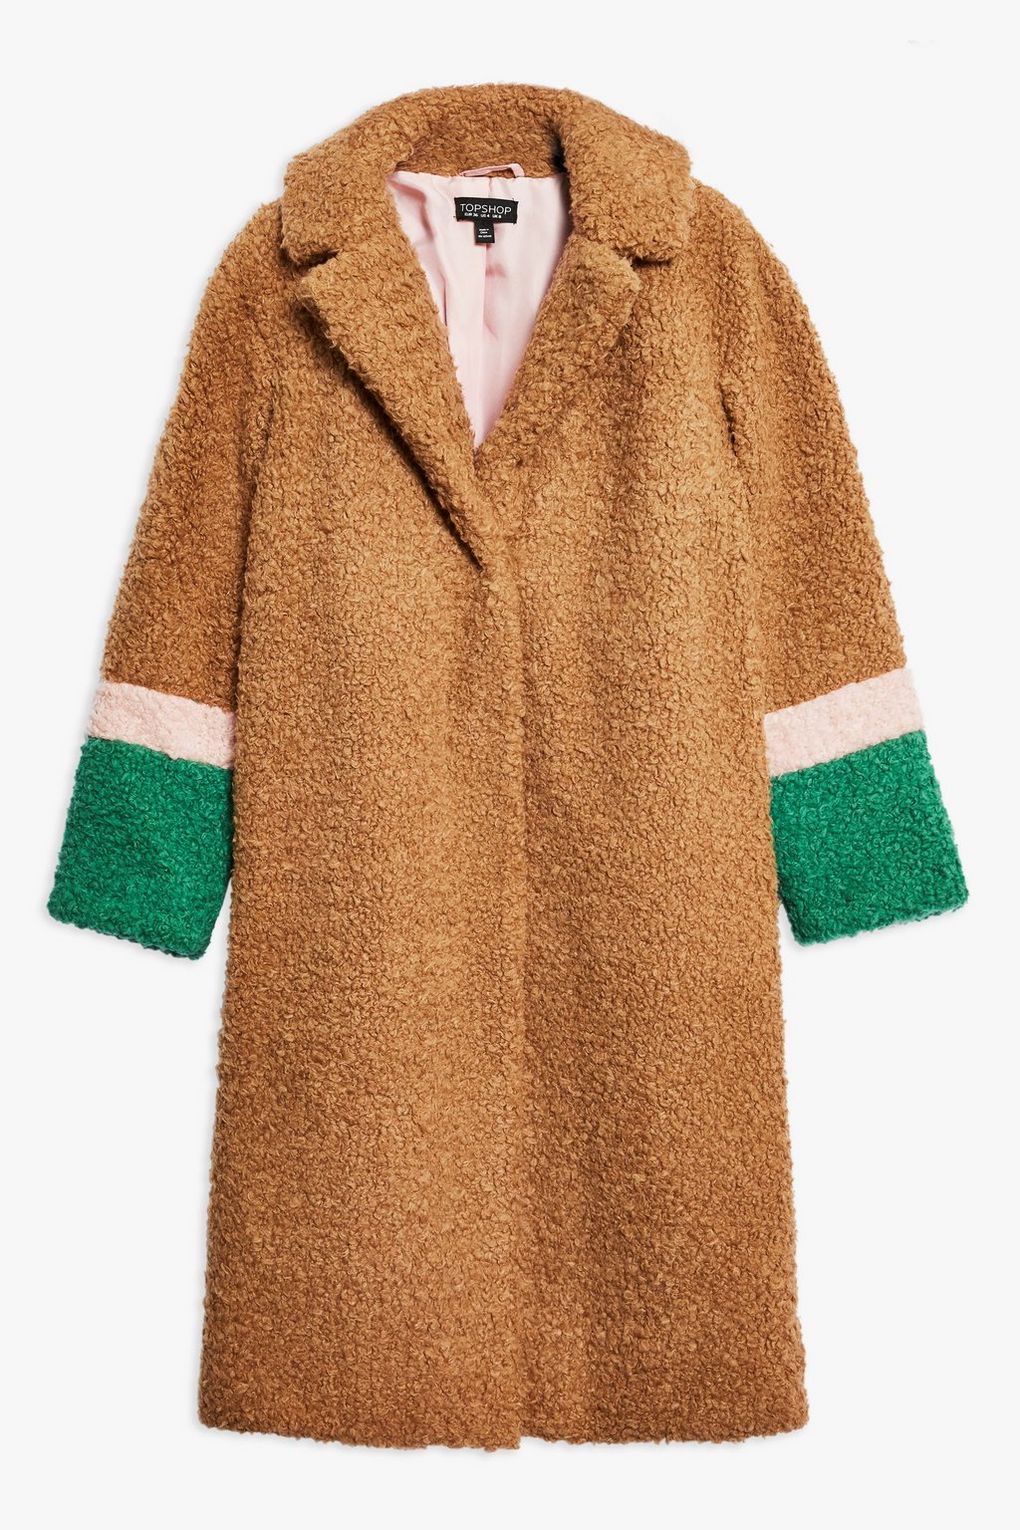 Topshop colour block teddy coat